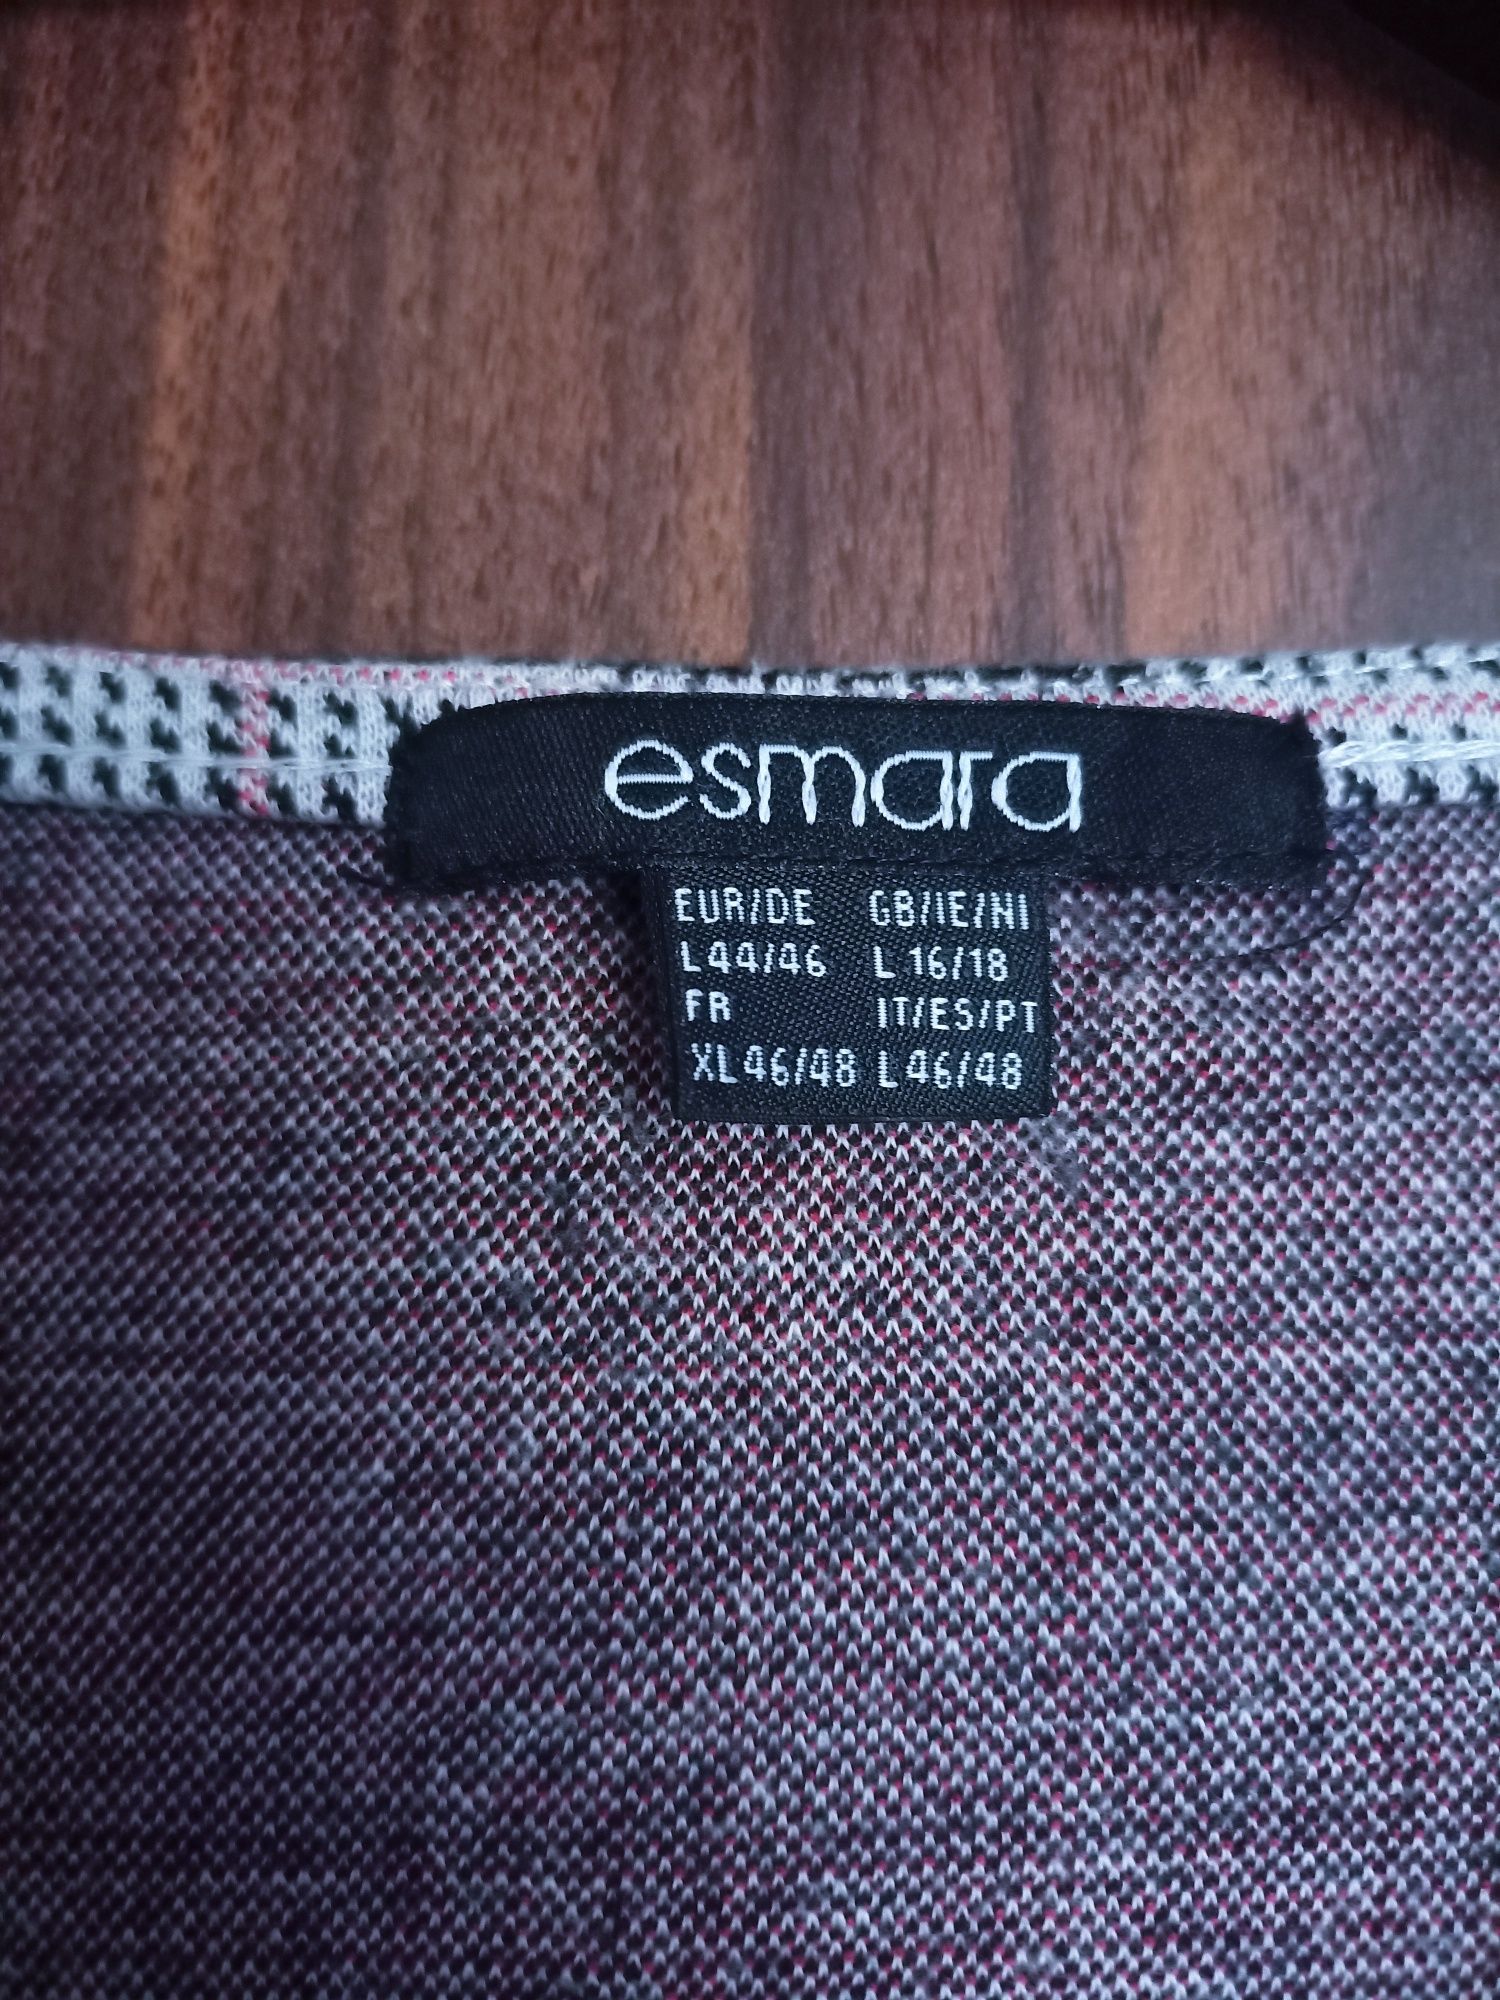 Esmara sukienka 44/46 w kratkę szara czarna różowa kratka krótki rękaw